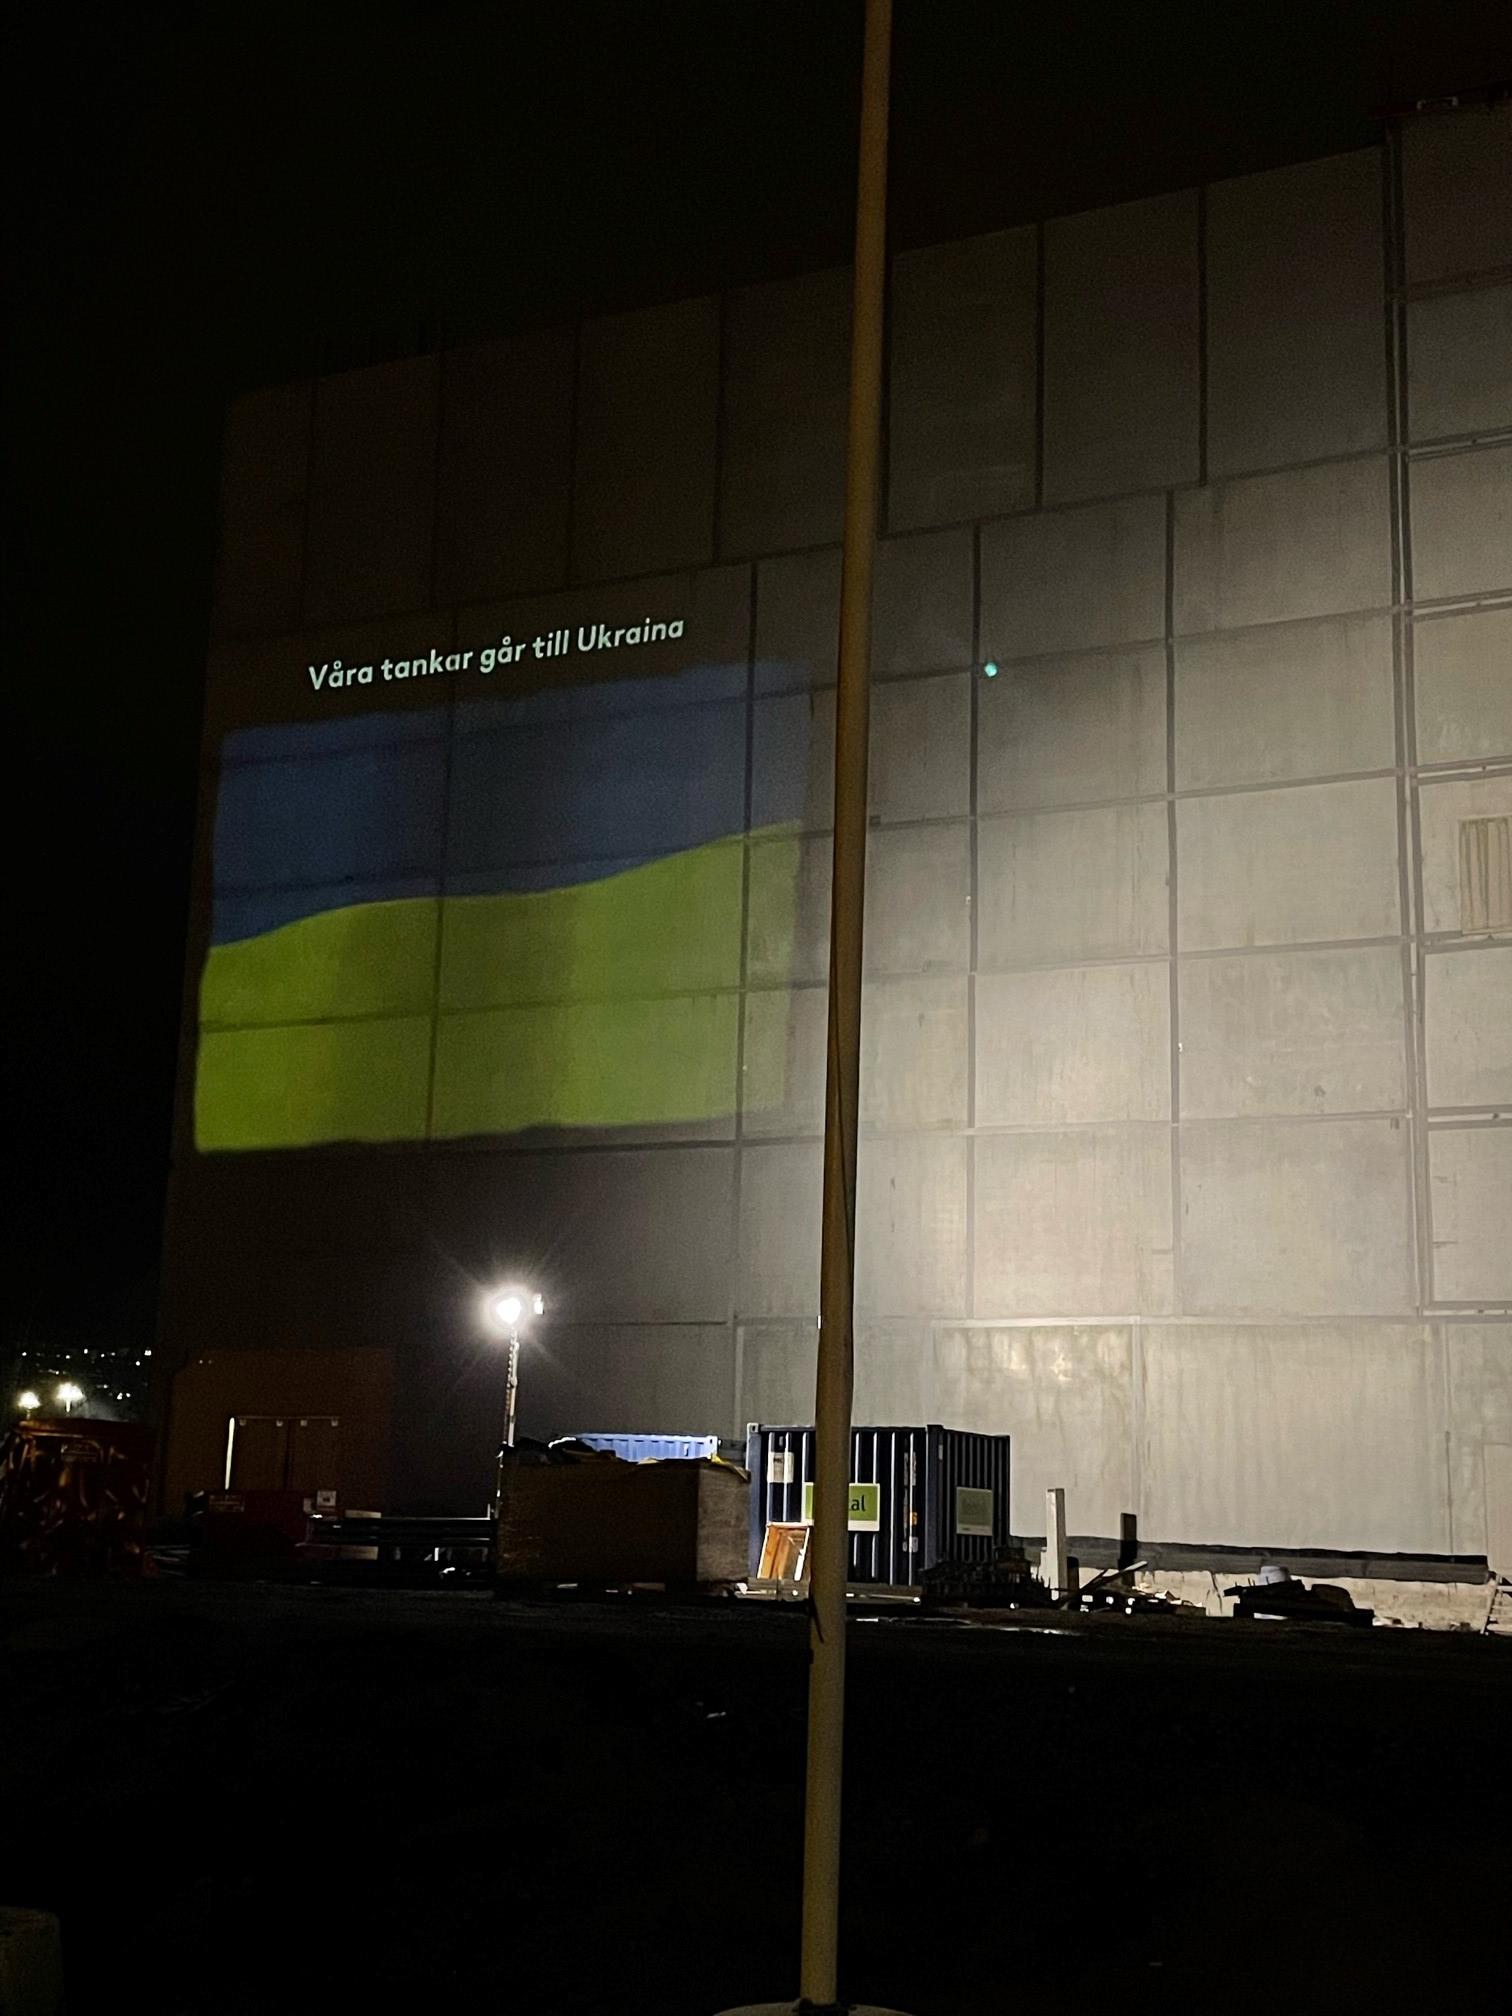 Belysning av vägg på parkeringshus Övertaget med Ukrainas flagga samt texten "Våra tankar går till Ukraina"